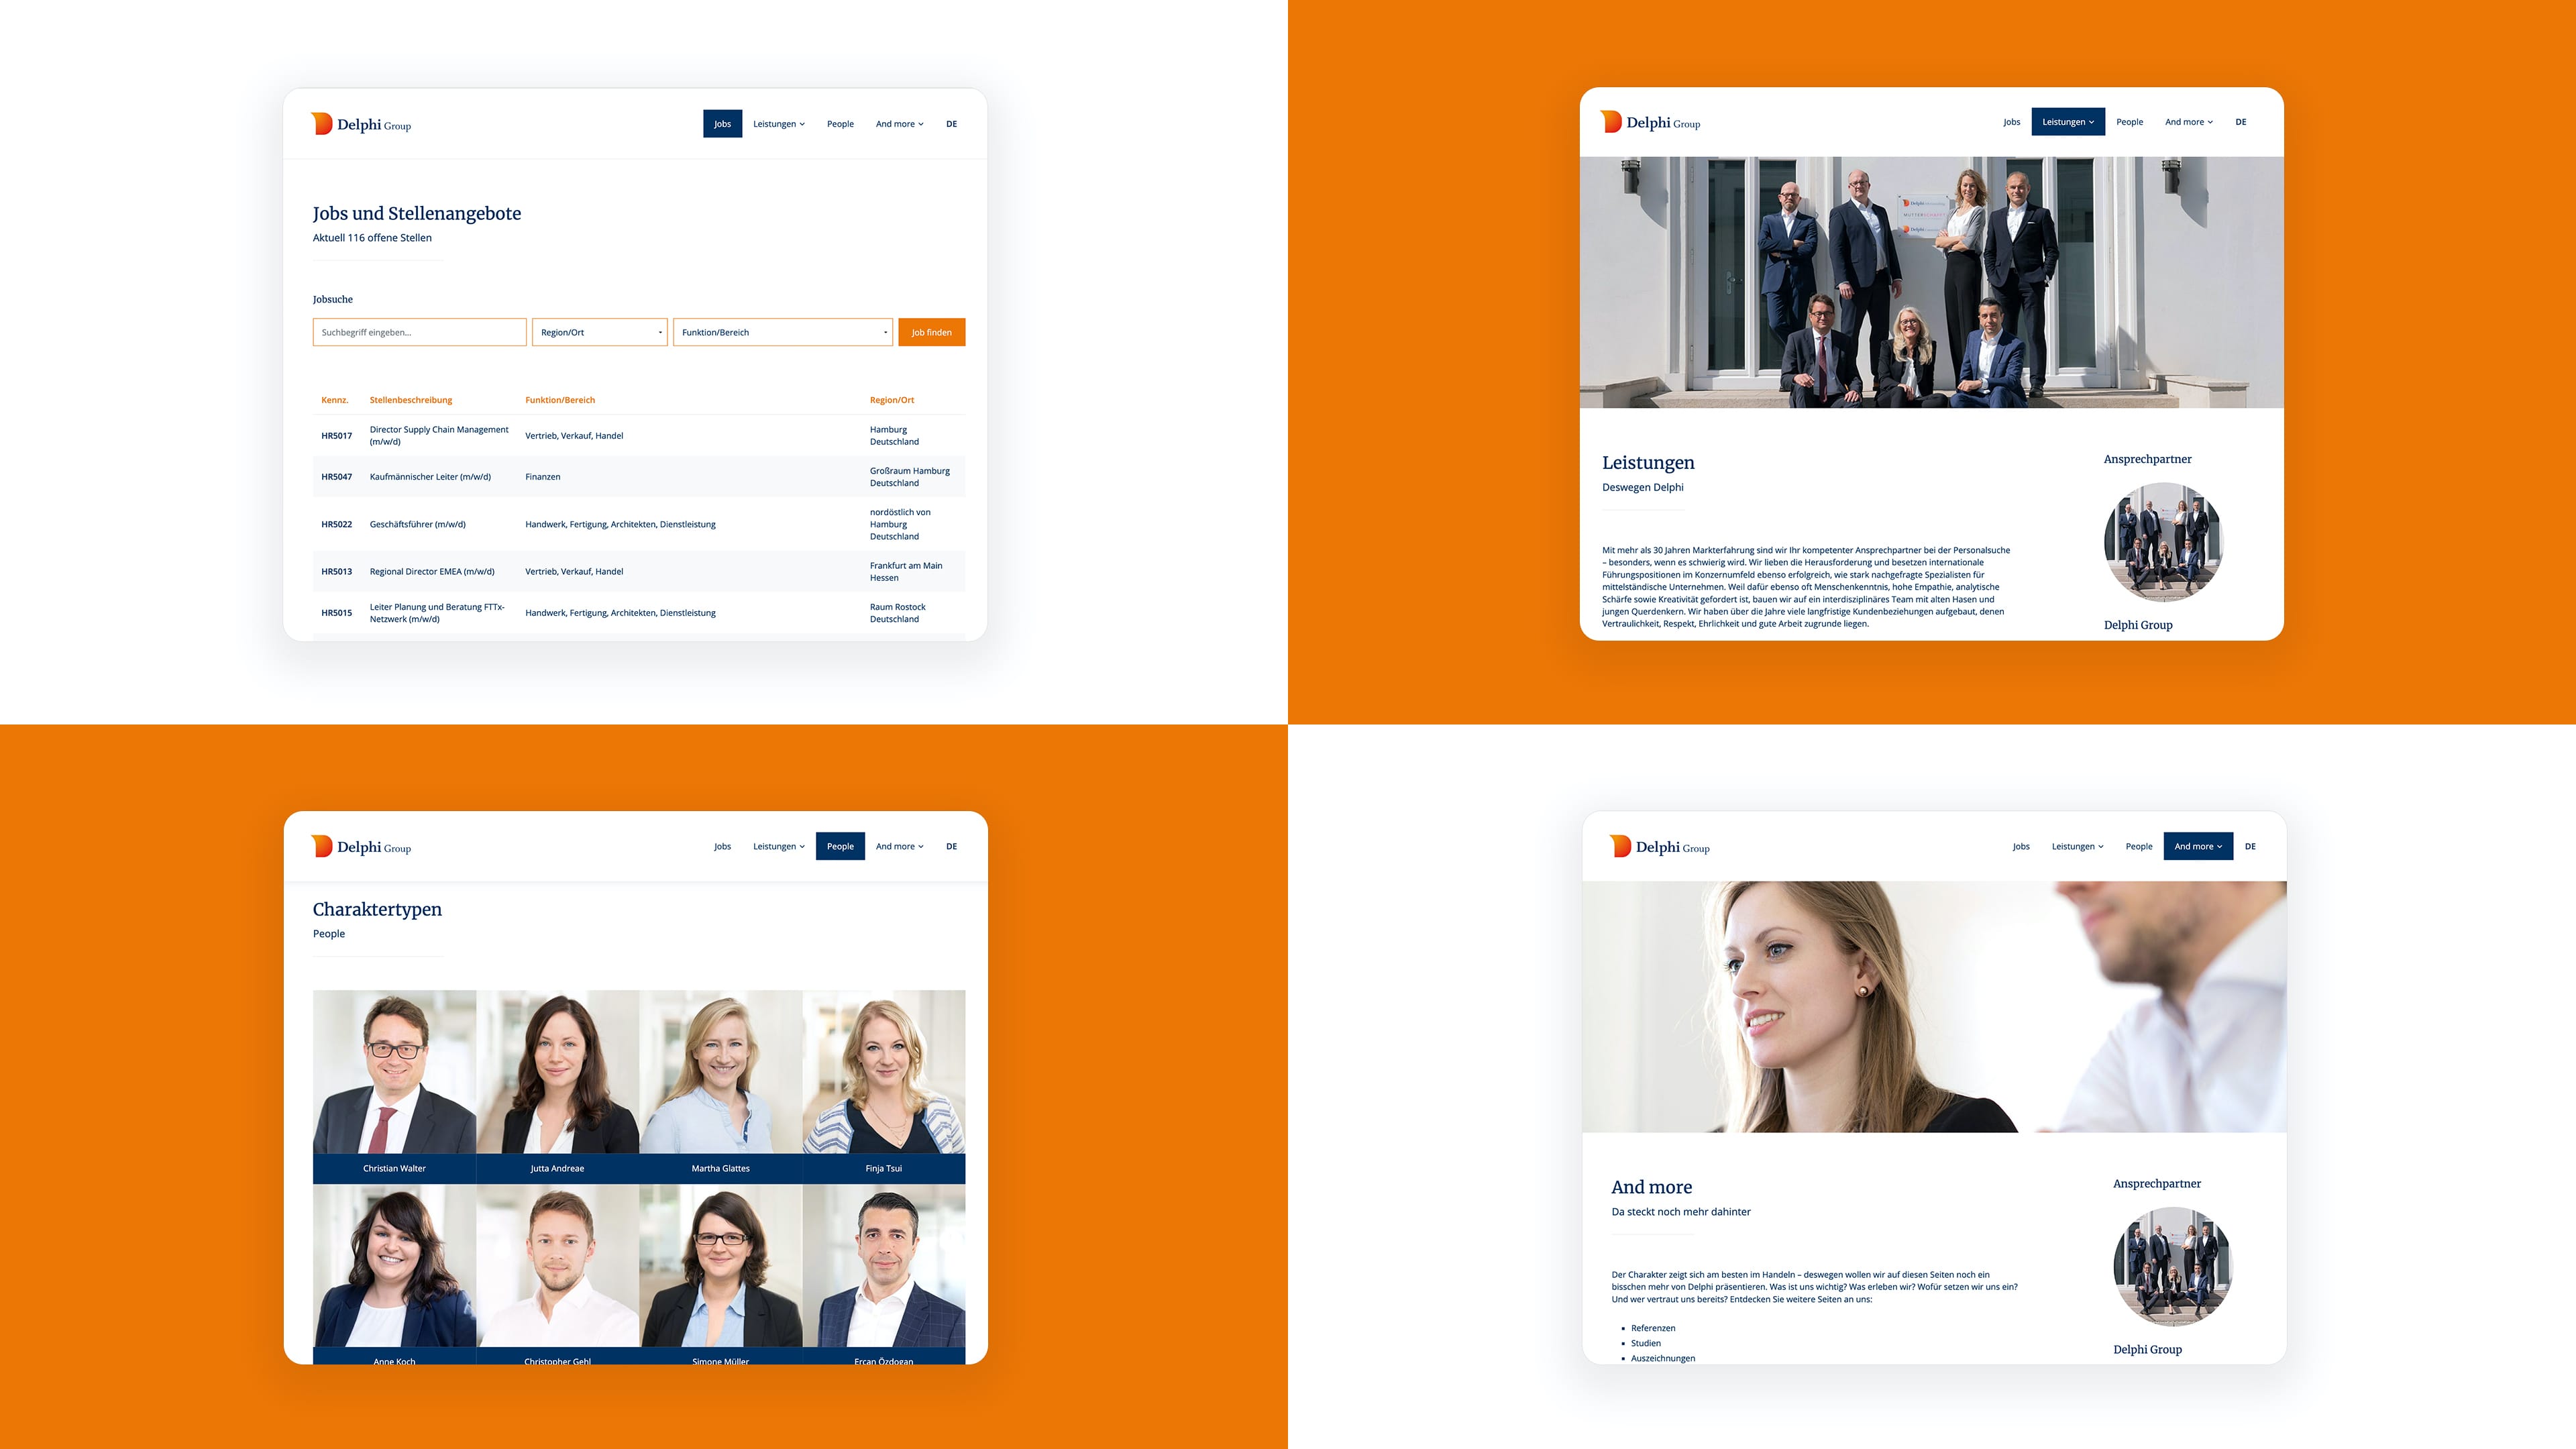 Collage von vier Screenshots der Website der Delphi Group auf weißem und orangenem Hintergrund